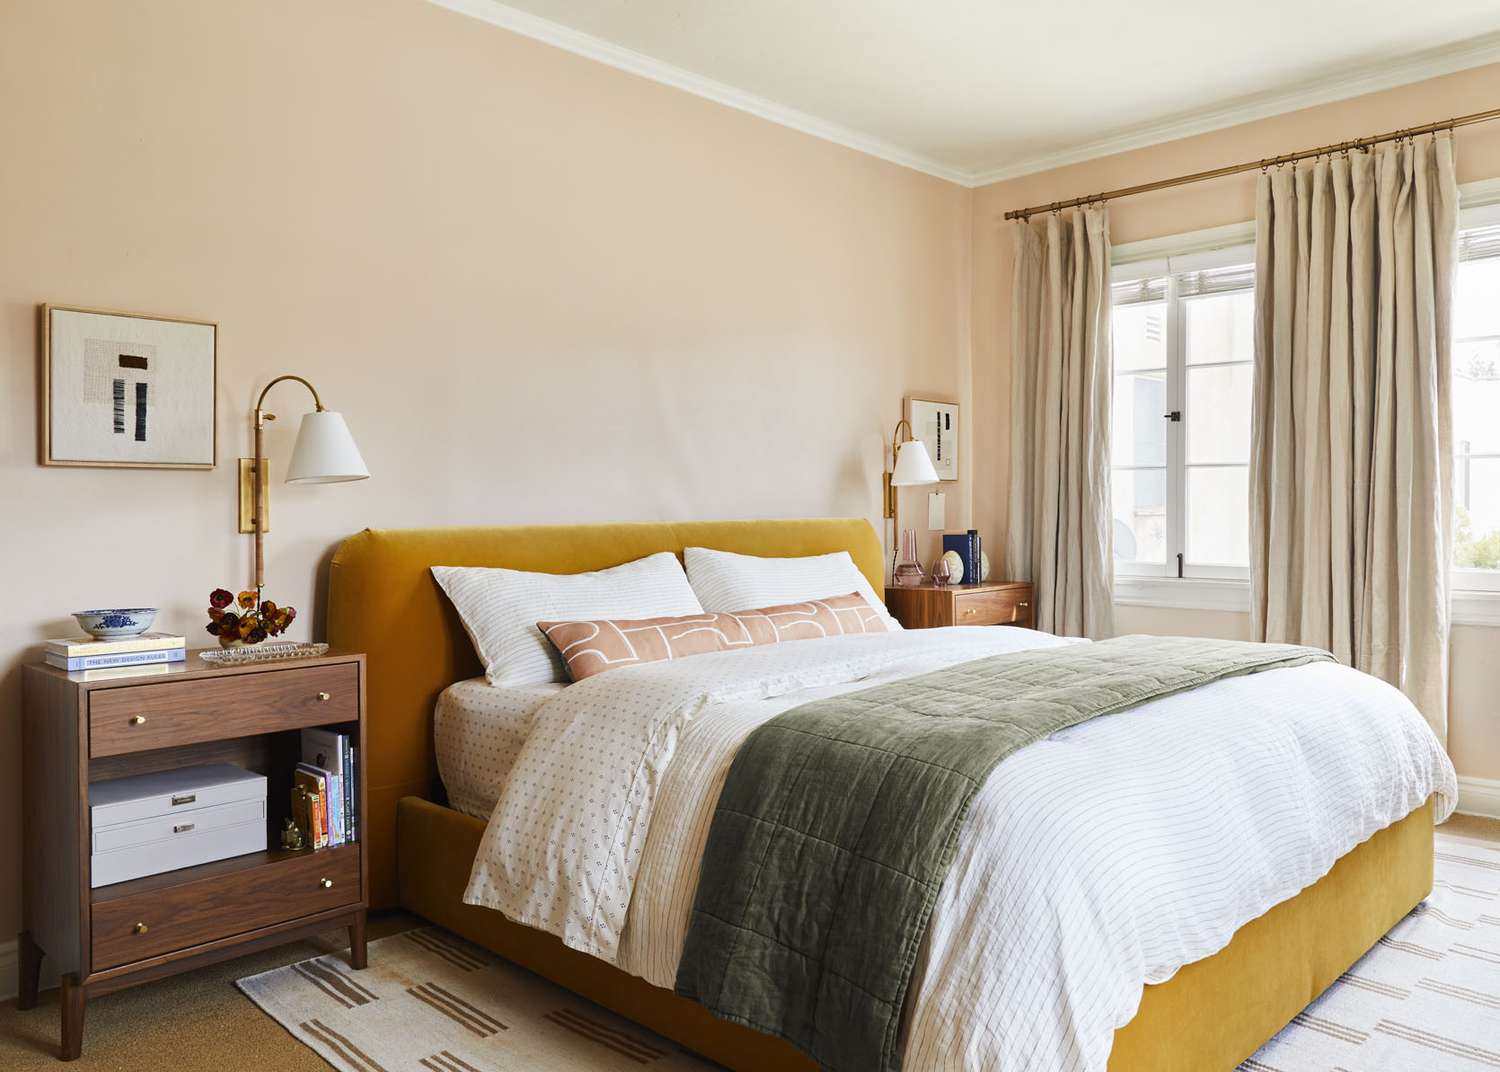 Uma cama amarelo mostarda se apóia em uma parede de cor pêssego suave